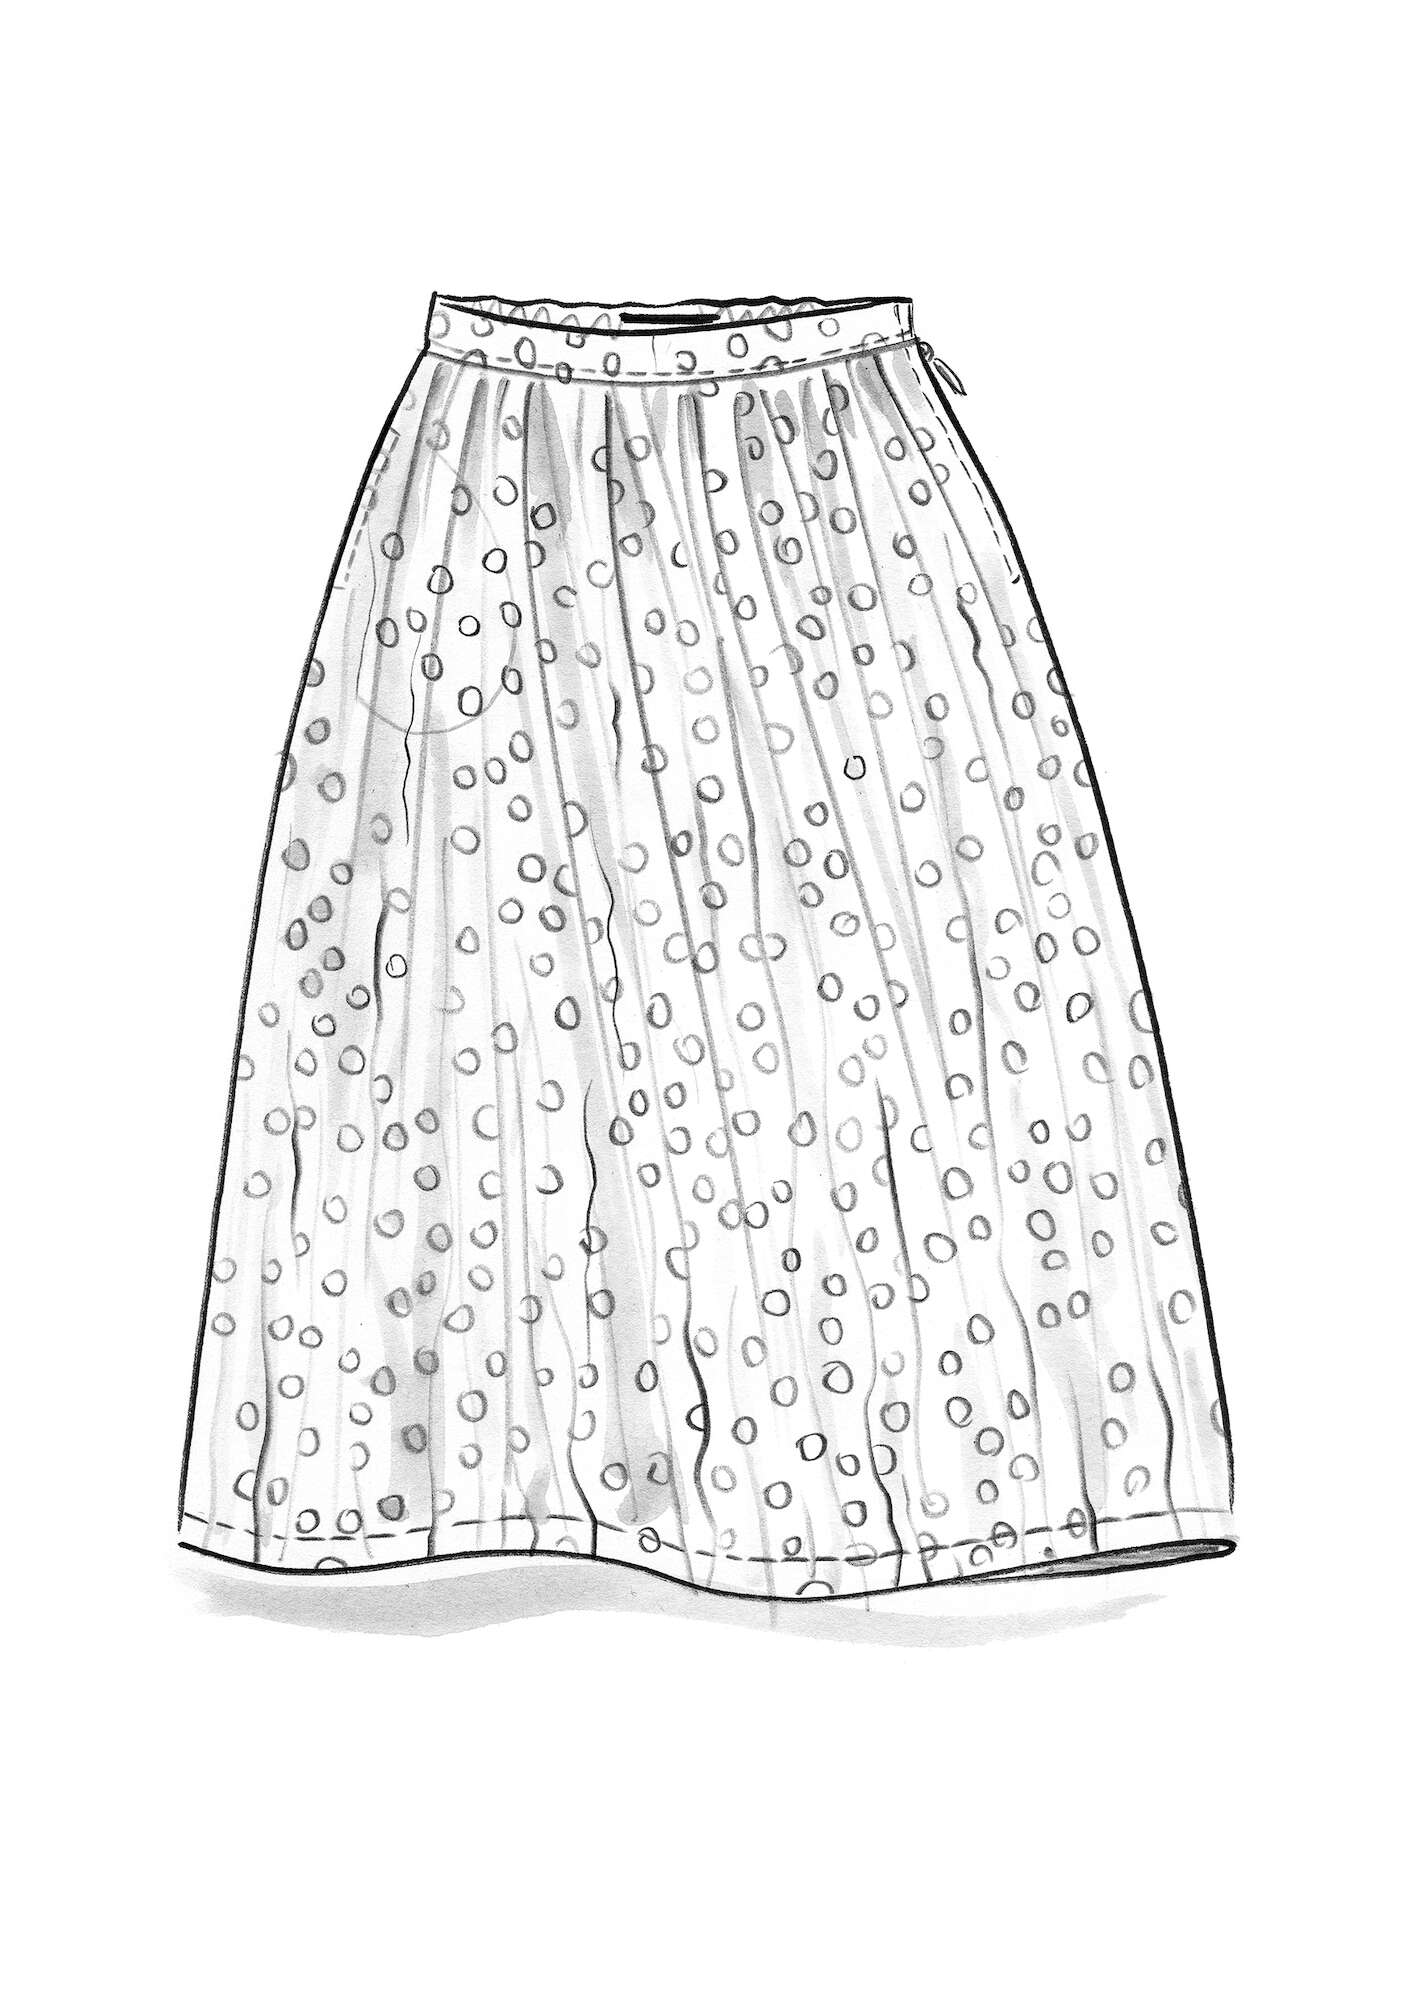 Vævet nederdel  Alice  i økologisk bomuld jerngrå/mønstret